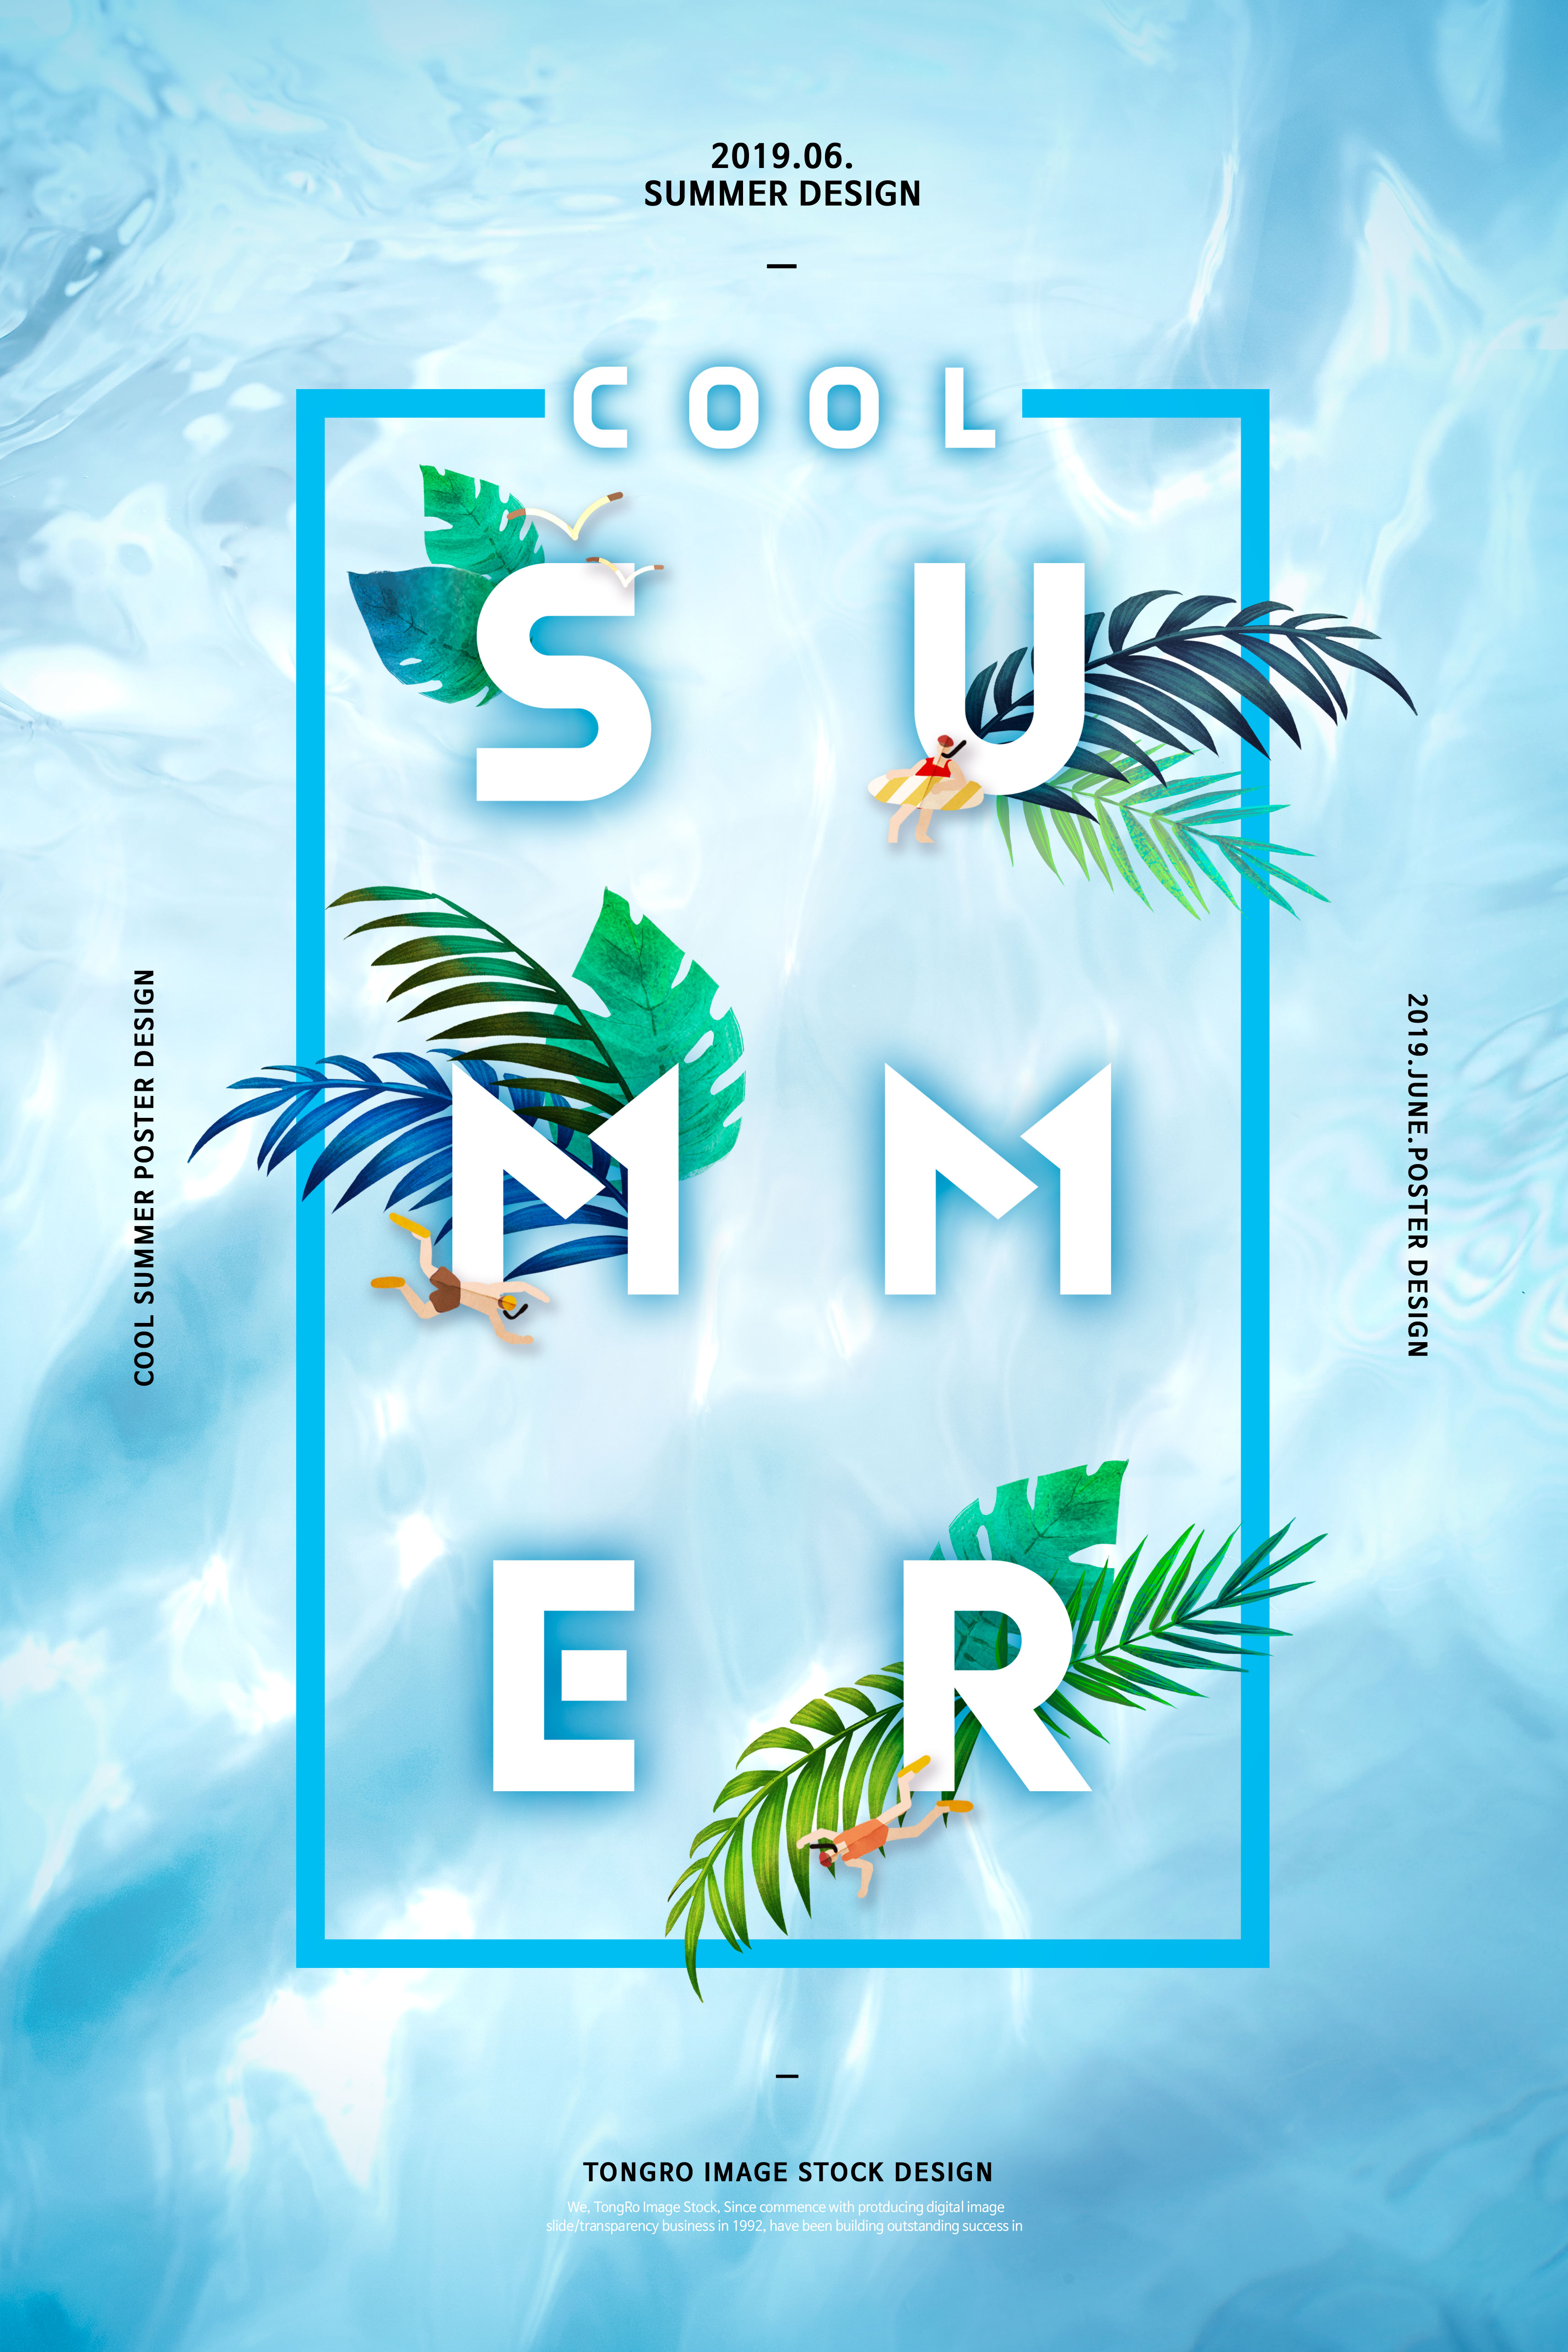 夏季酷暑清爽活动宣传广告海报设计套装插图(5)